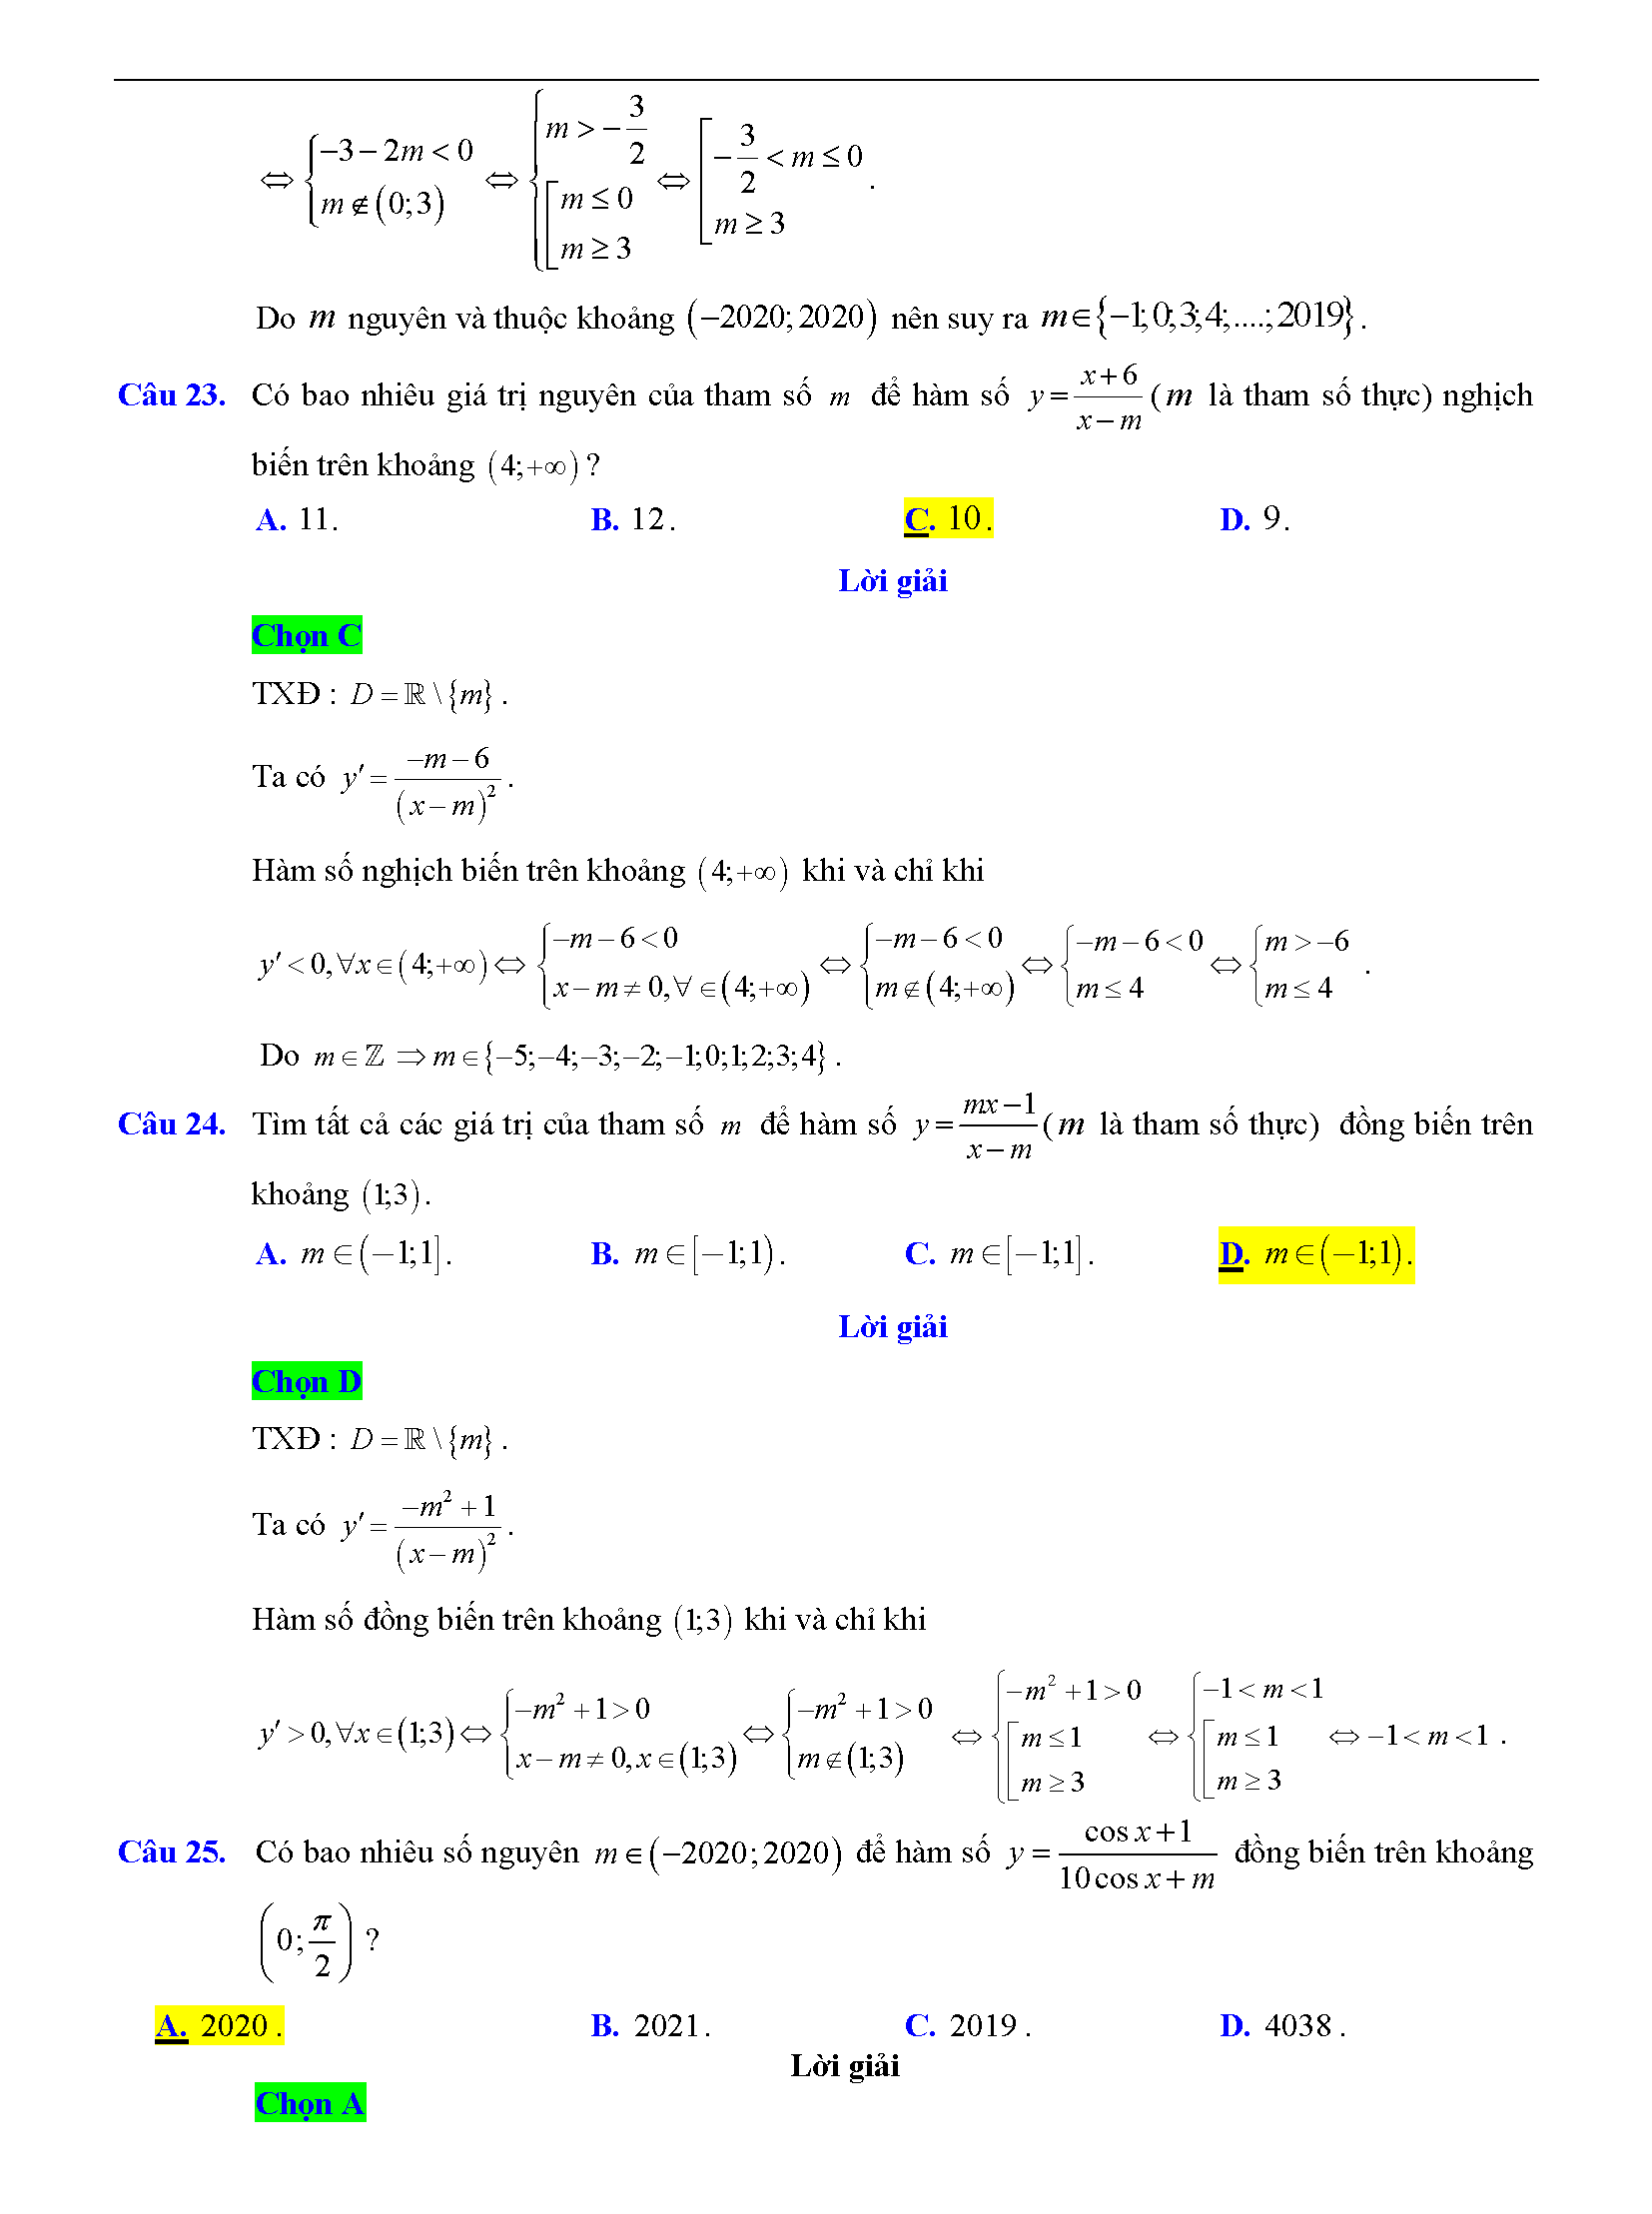 Trắc nghiệm tìm m để hàm số đơn điệu 16